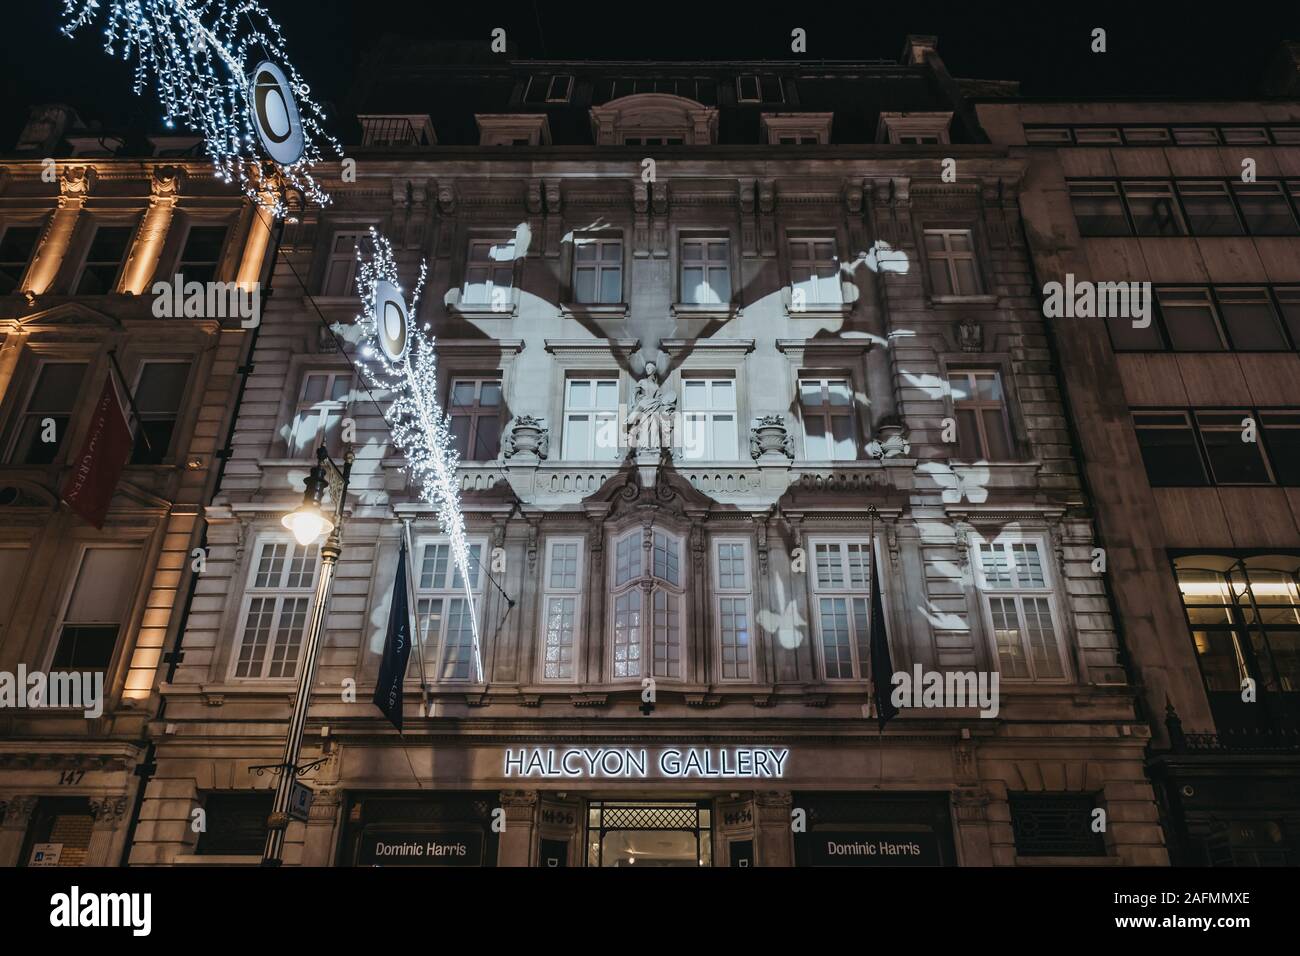 Londres, Royaume-Uni - 17 novembre 2019 : spectacle de lumière papillon par Dominic Harris sur la façade de l'Halcyon Gallery, London, UK, son plus grand art numérique projectio Banque D'Images